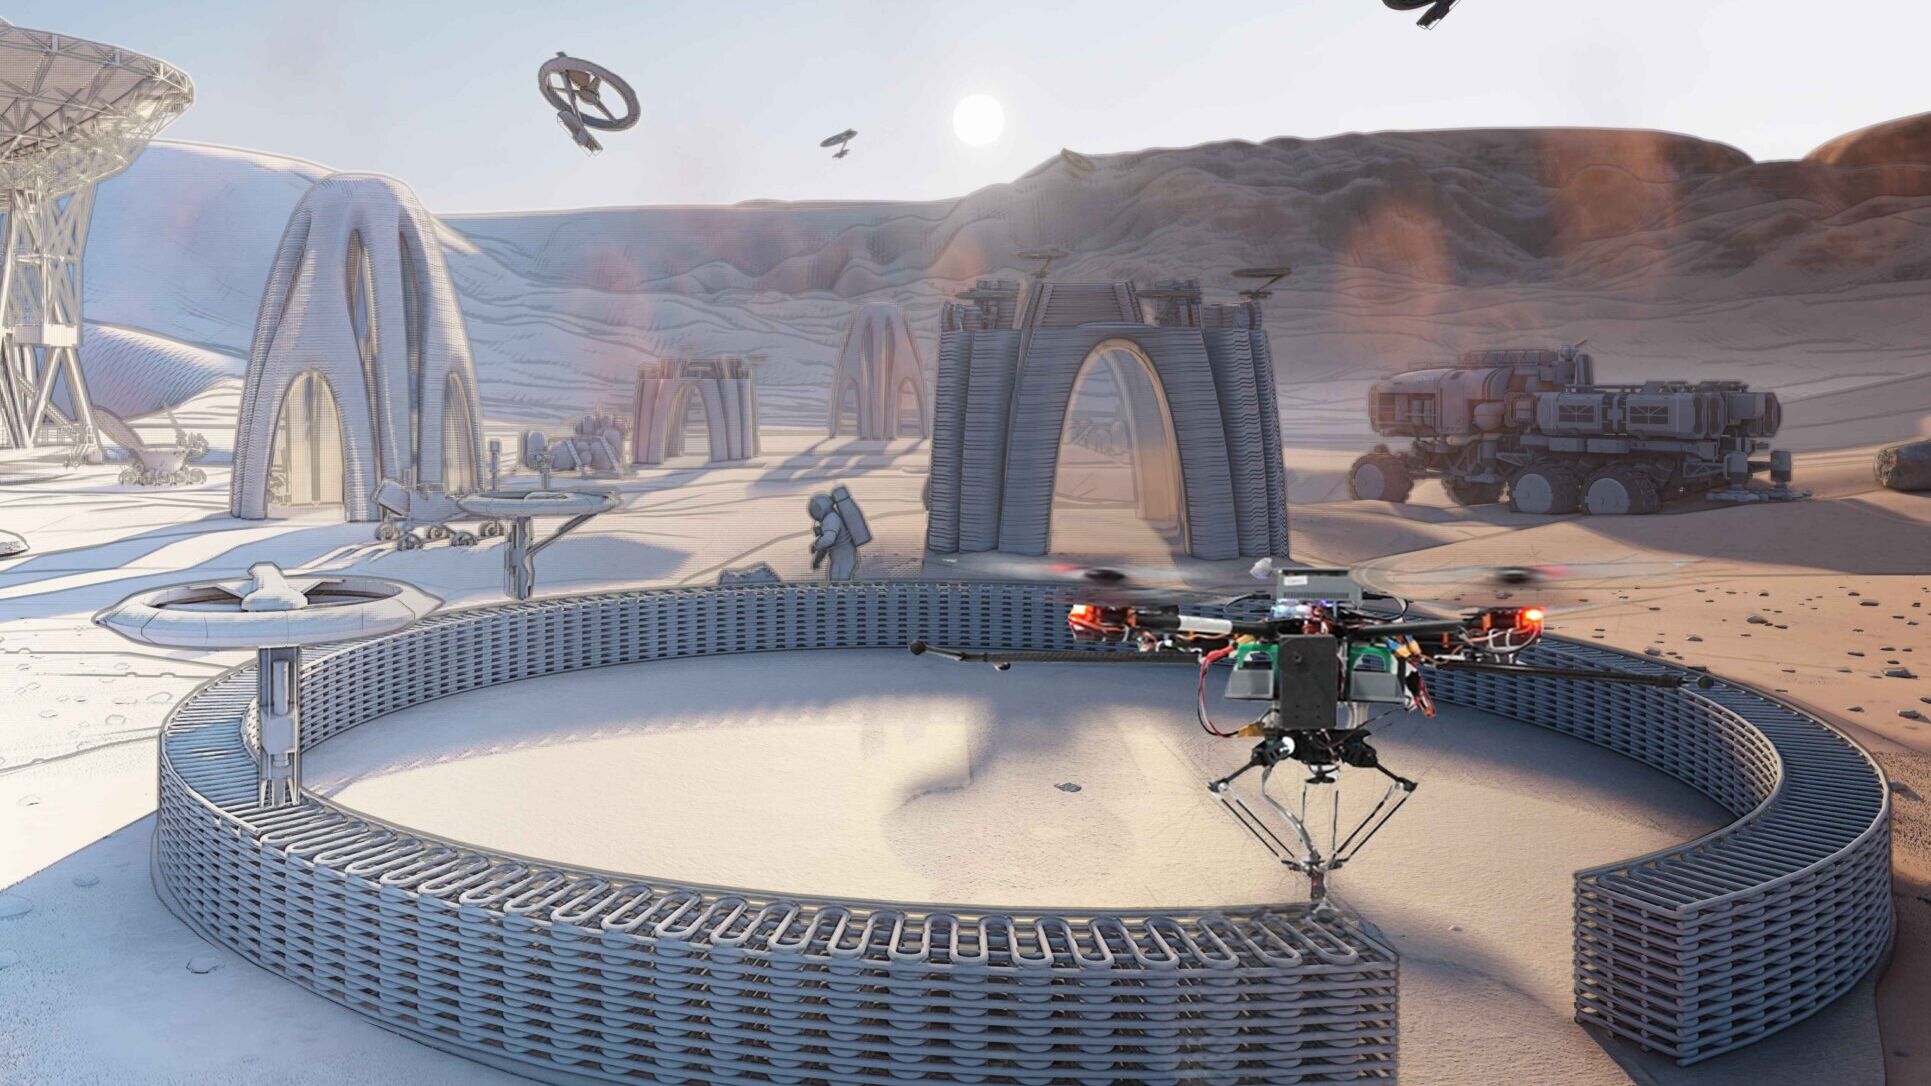 Droni collaborativi: uno sguardo al futuro: gli sciami di droni potrebbero essere utilizzati anche nello spazio, ad esempio in una futura missione sul pianeta Marte